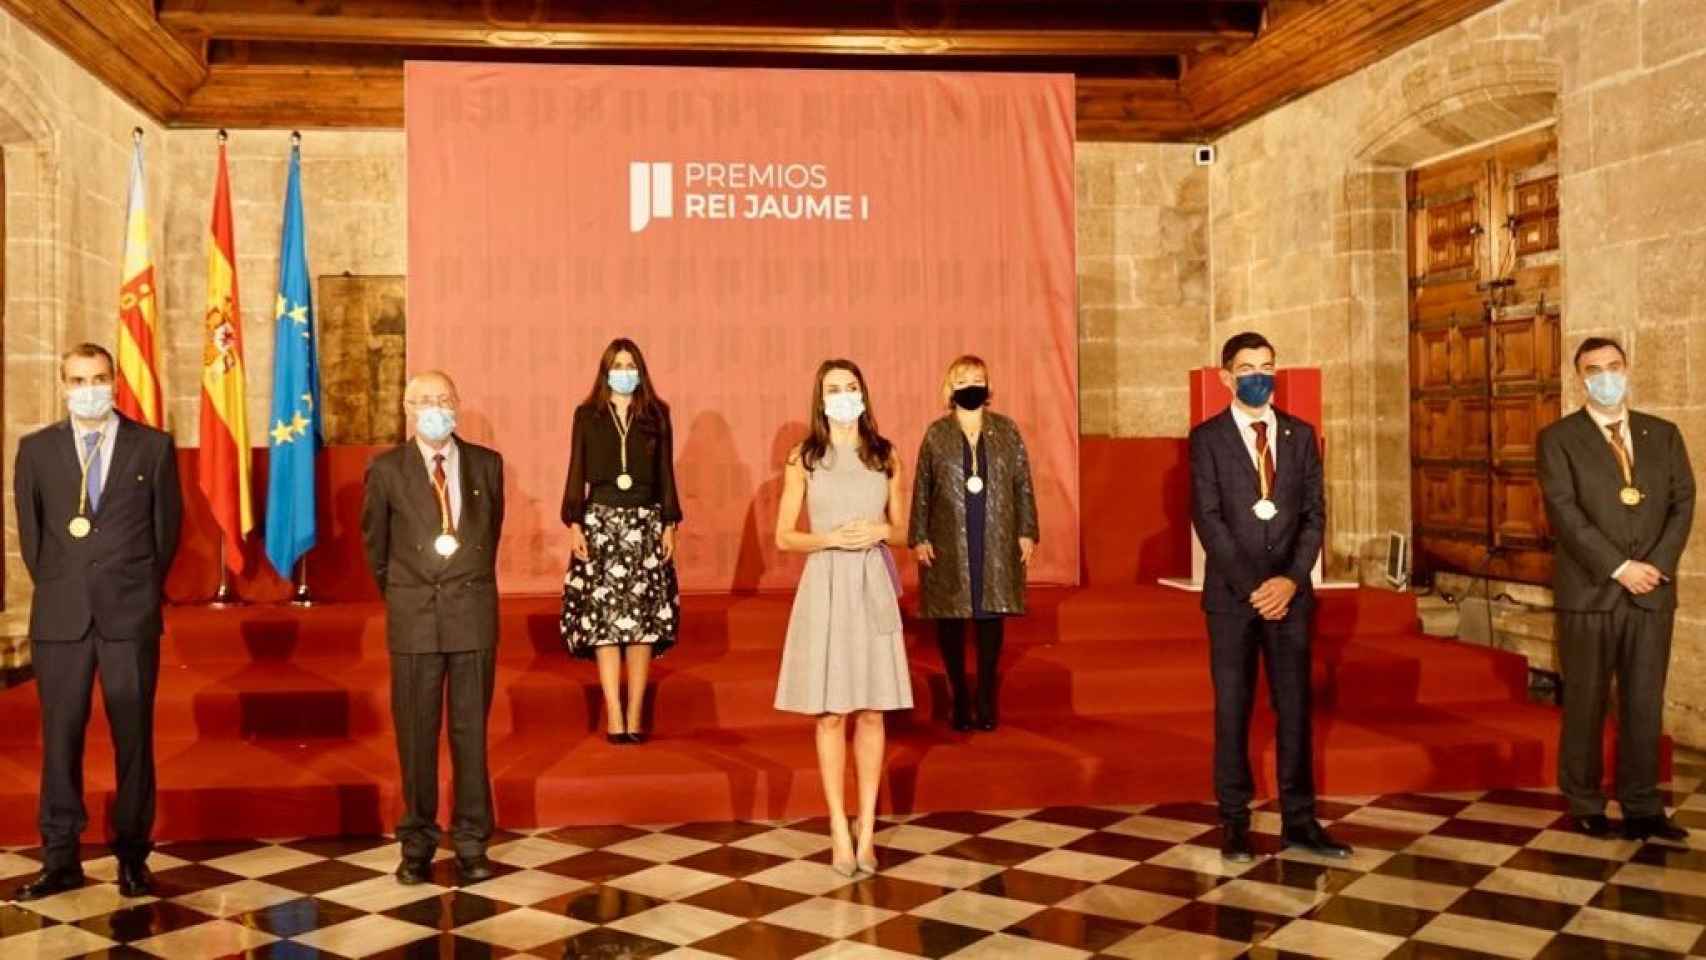 La Reina Letizia posa junto a los premiados de los Rei Jaume I. EE